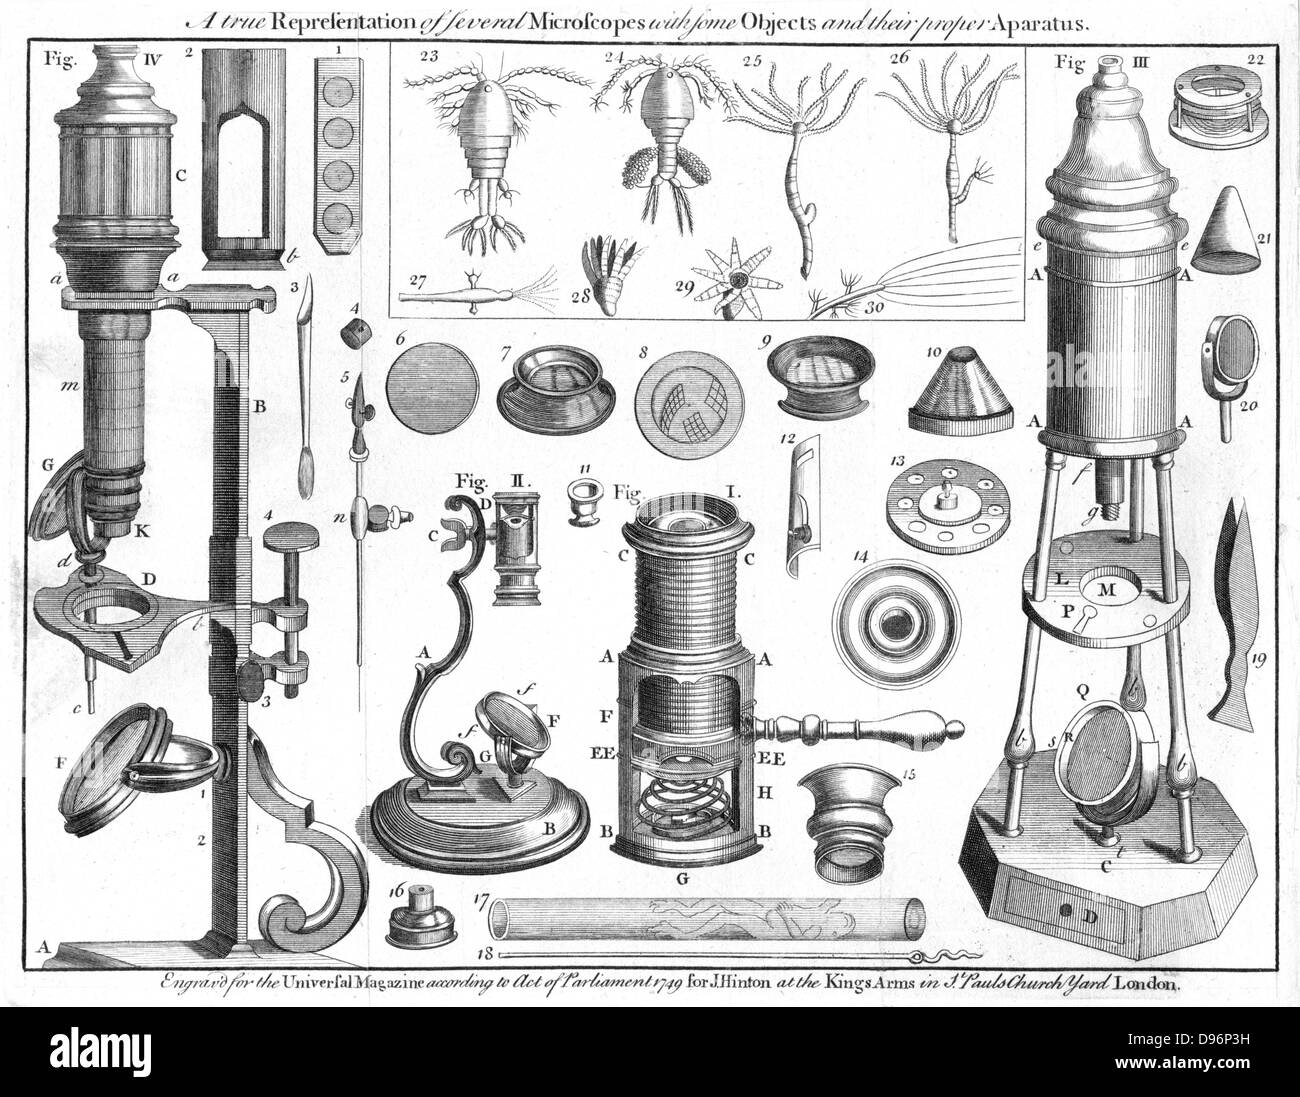 Storia dei microscopi immagini e fotografie stock ad alta risoluzione -  Alamy